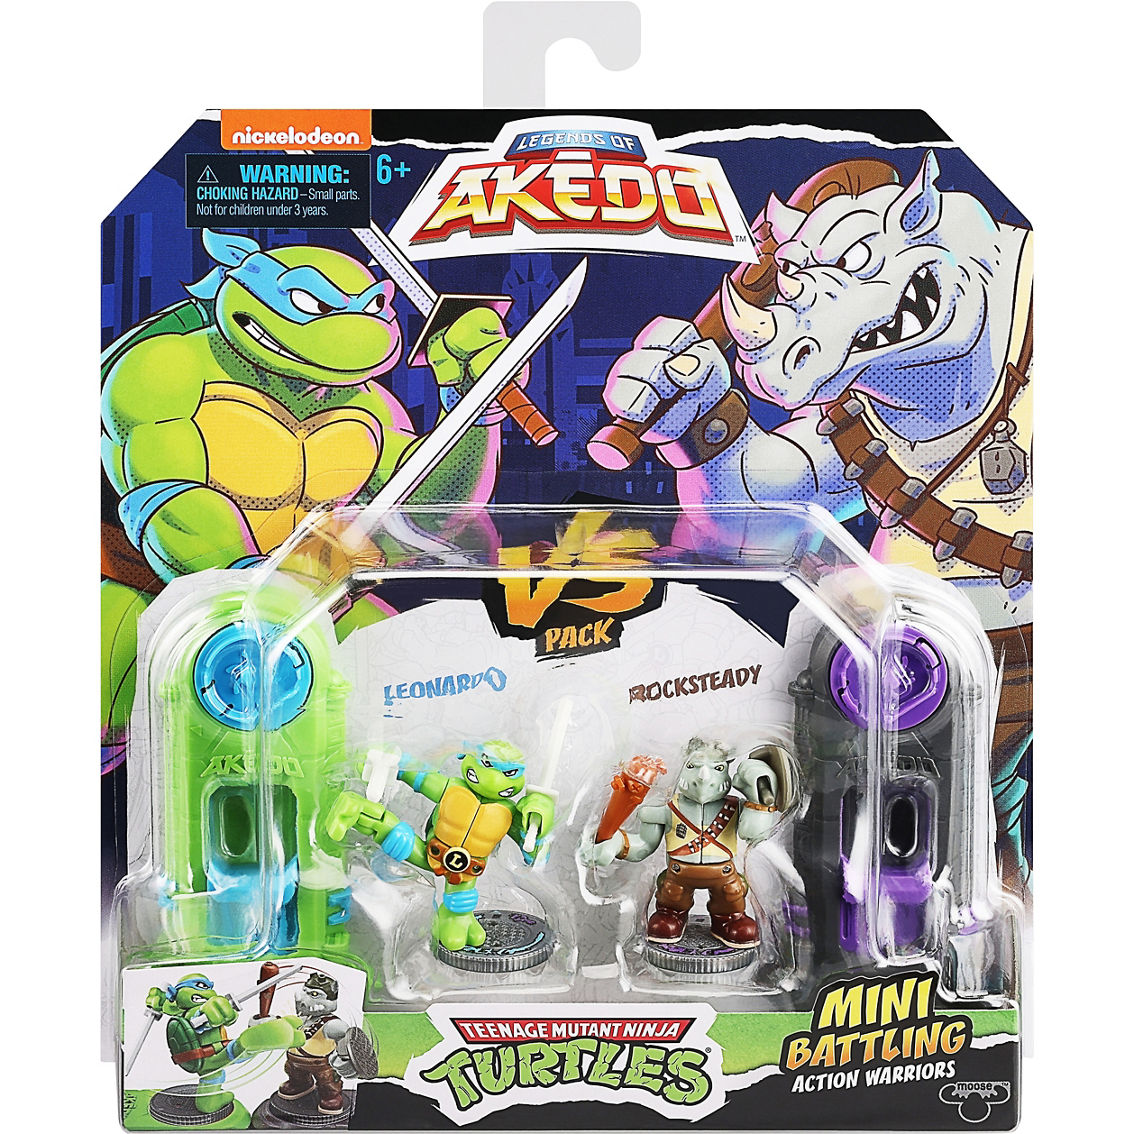 Moose Toys Akedo Teenage Mutant Ninja Turtles S1 Battle Arena